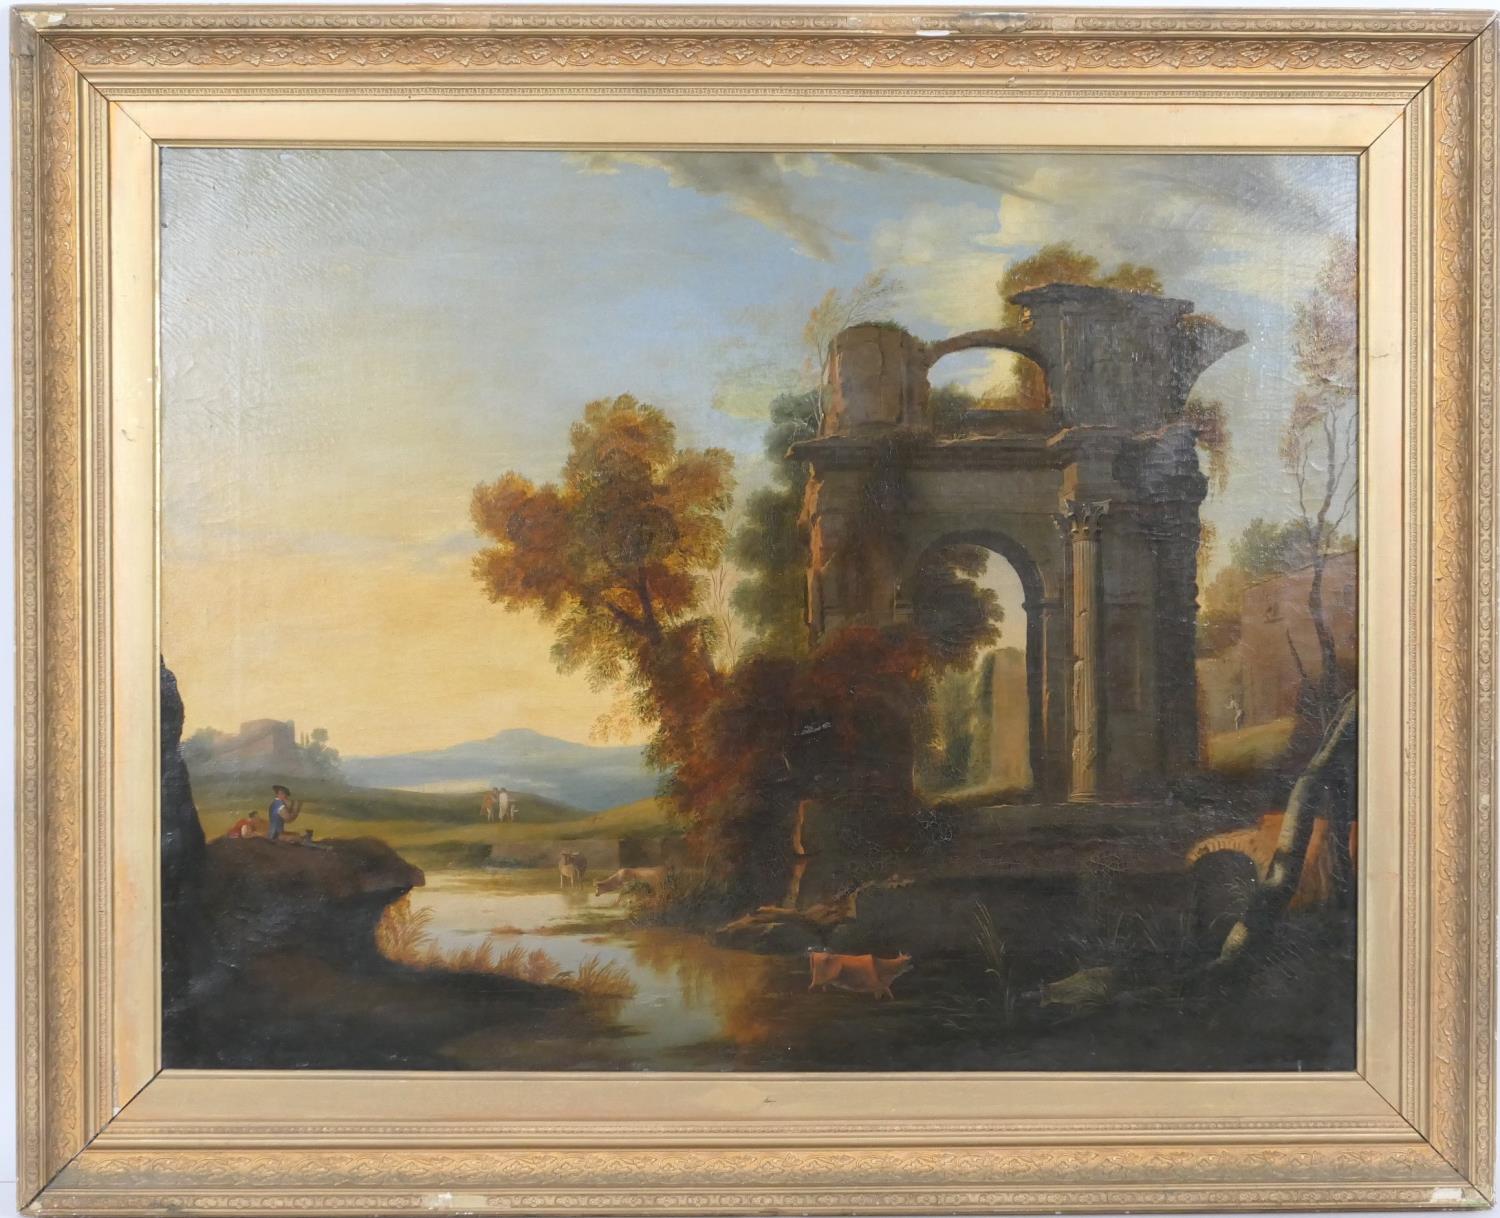 English School (early 19th Century), Italianate capriccio landscape, oil on canvas, 66cm x 85cm